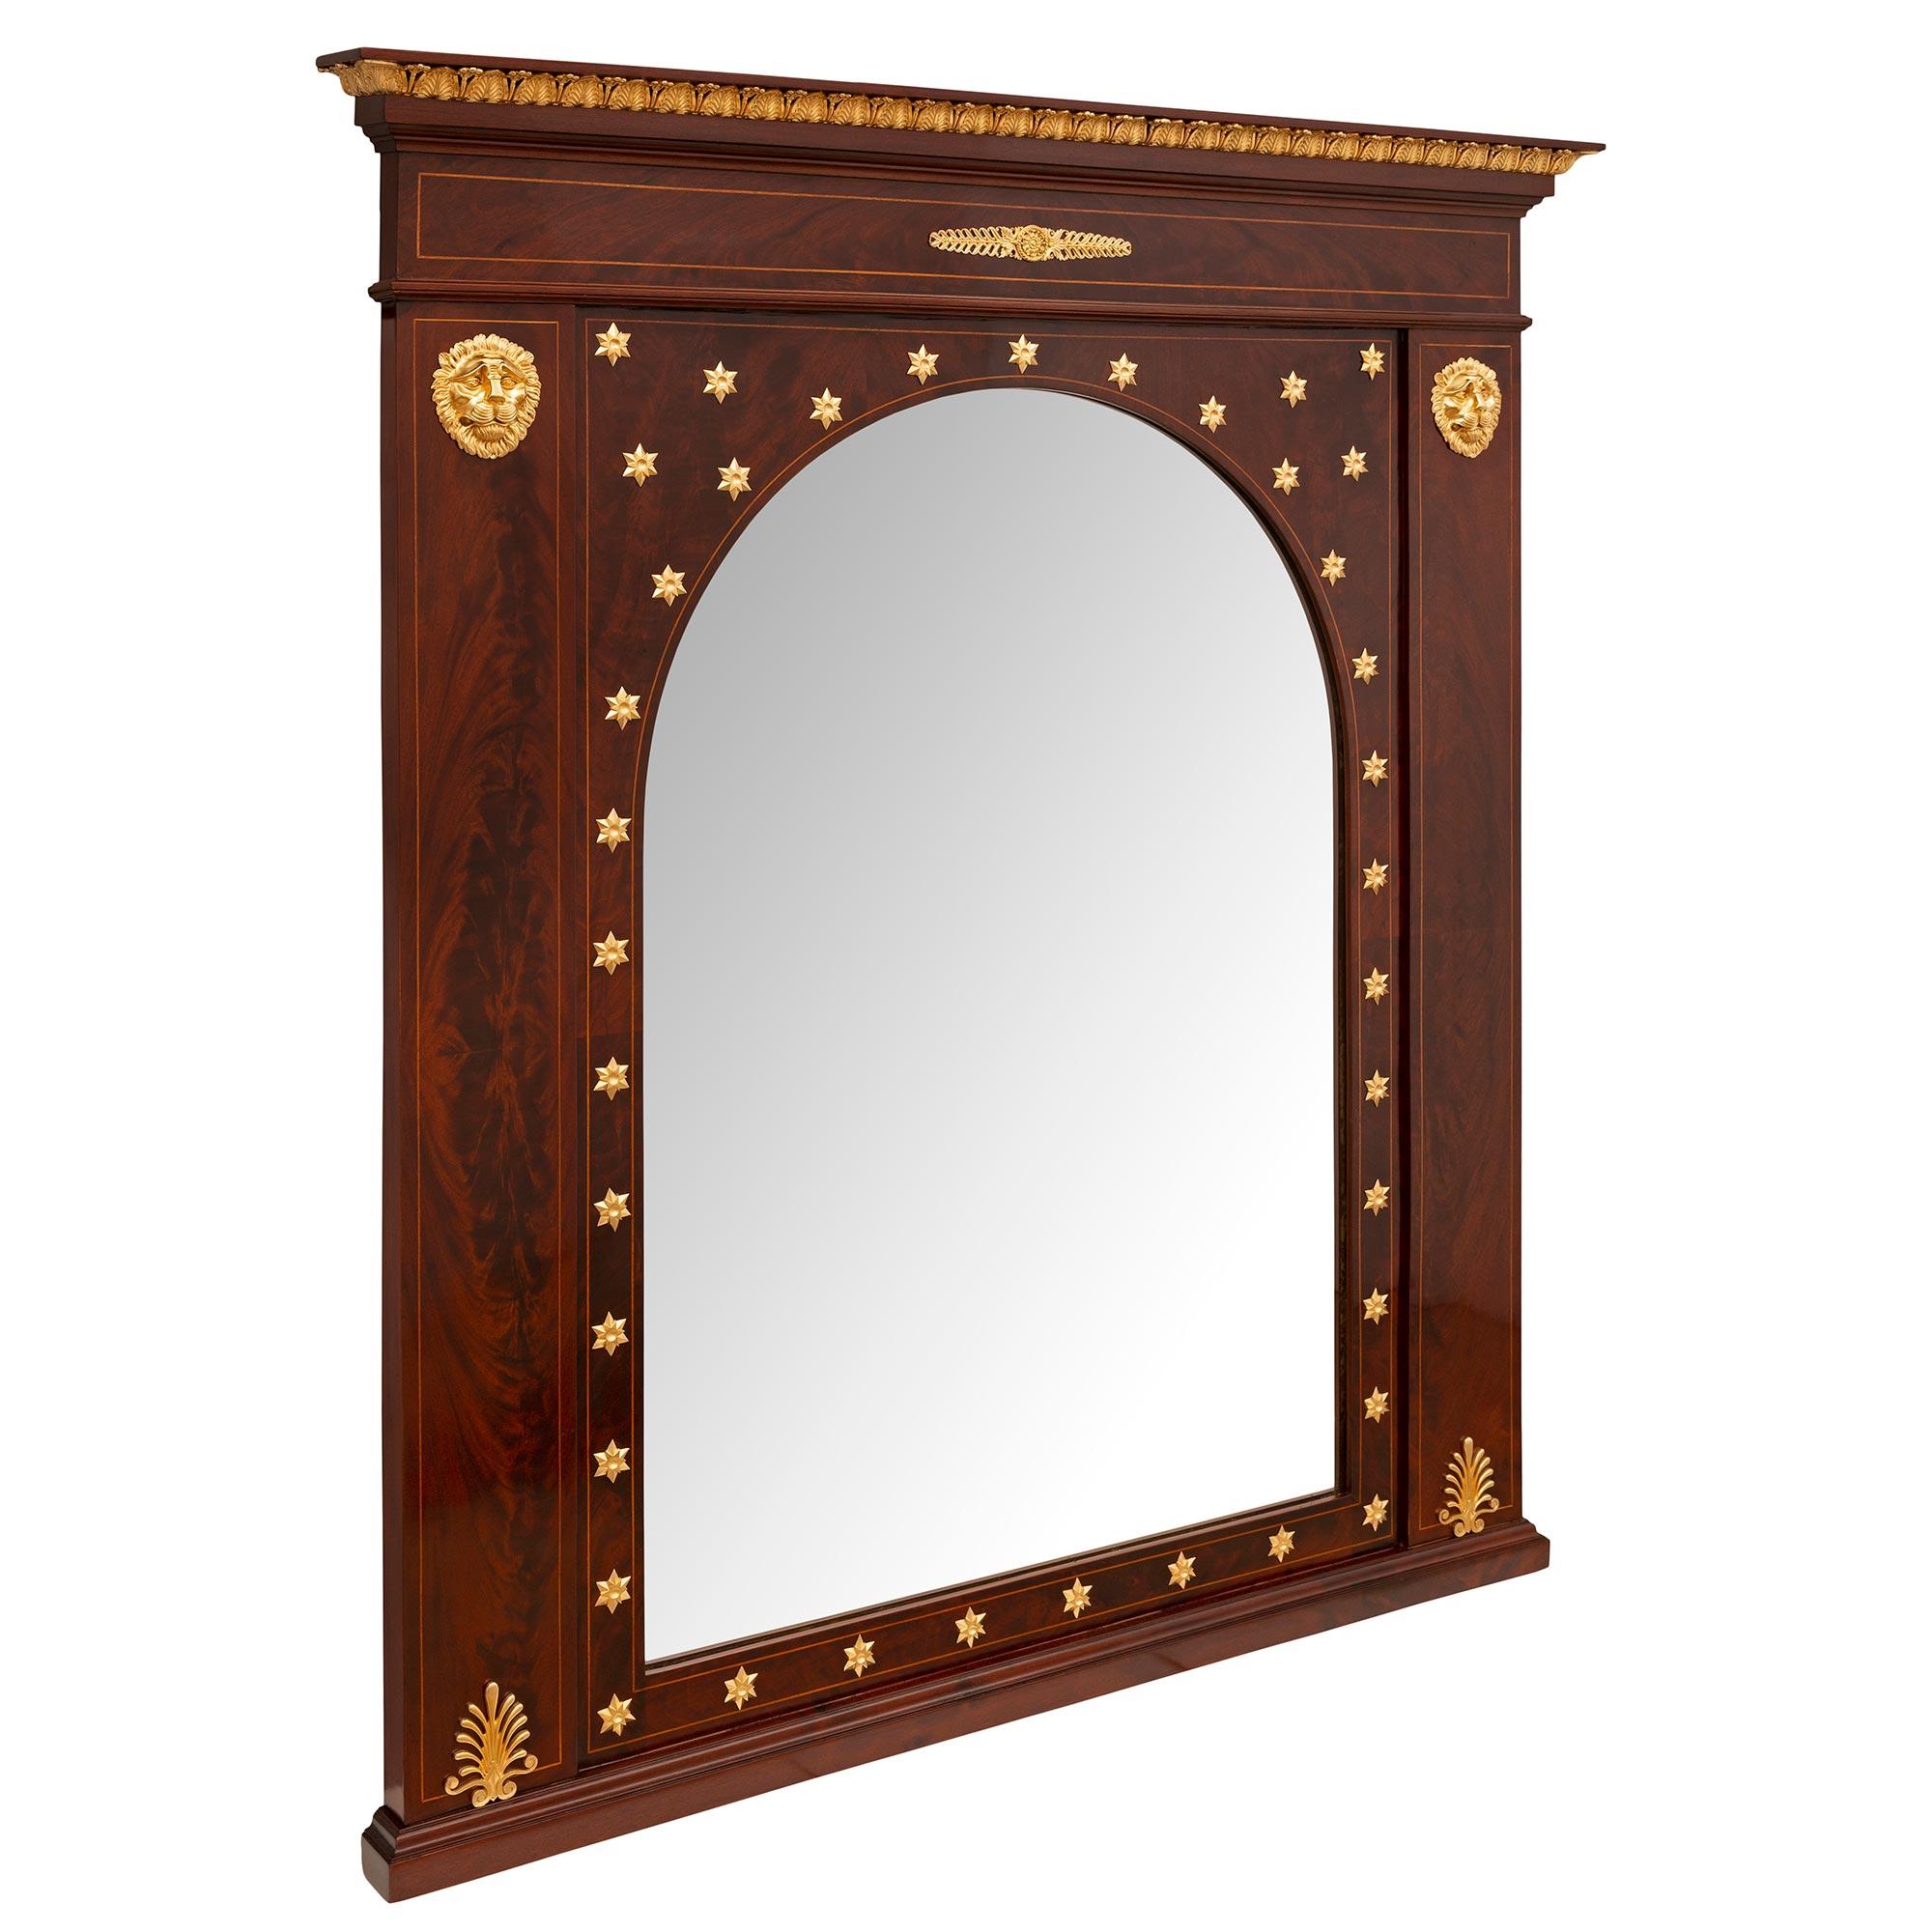 Un impressionnant et unique miroir en acajou et bronze doré de style Empire, datant du 19e siècle. Le miroir est surélevé par une base droite au motif finement marbré. La plaque de miroir centrale d'origine présente un élégant design en forme d'arc